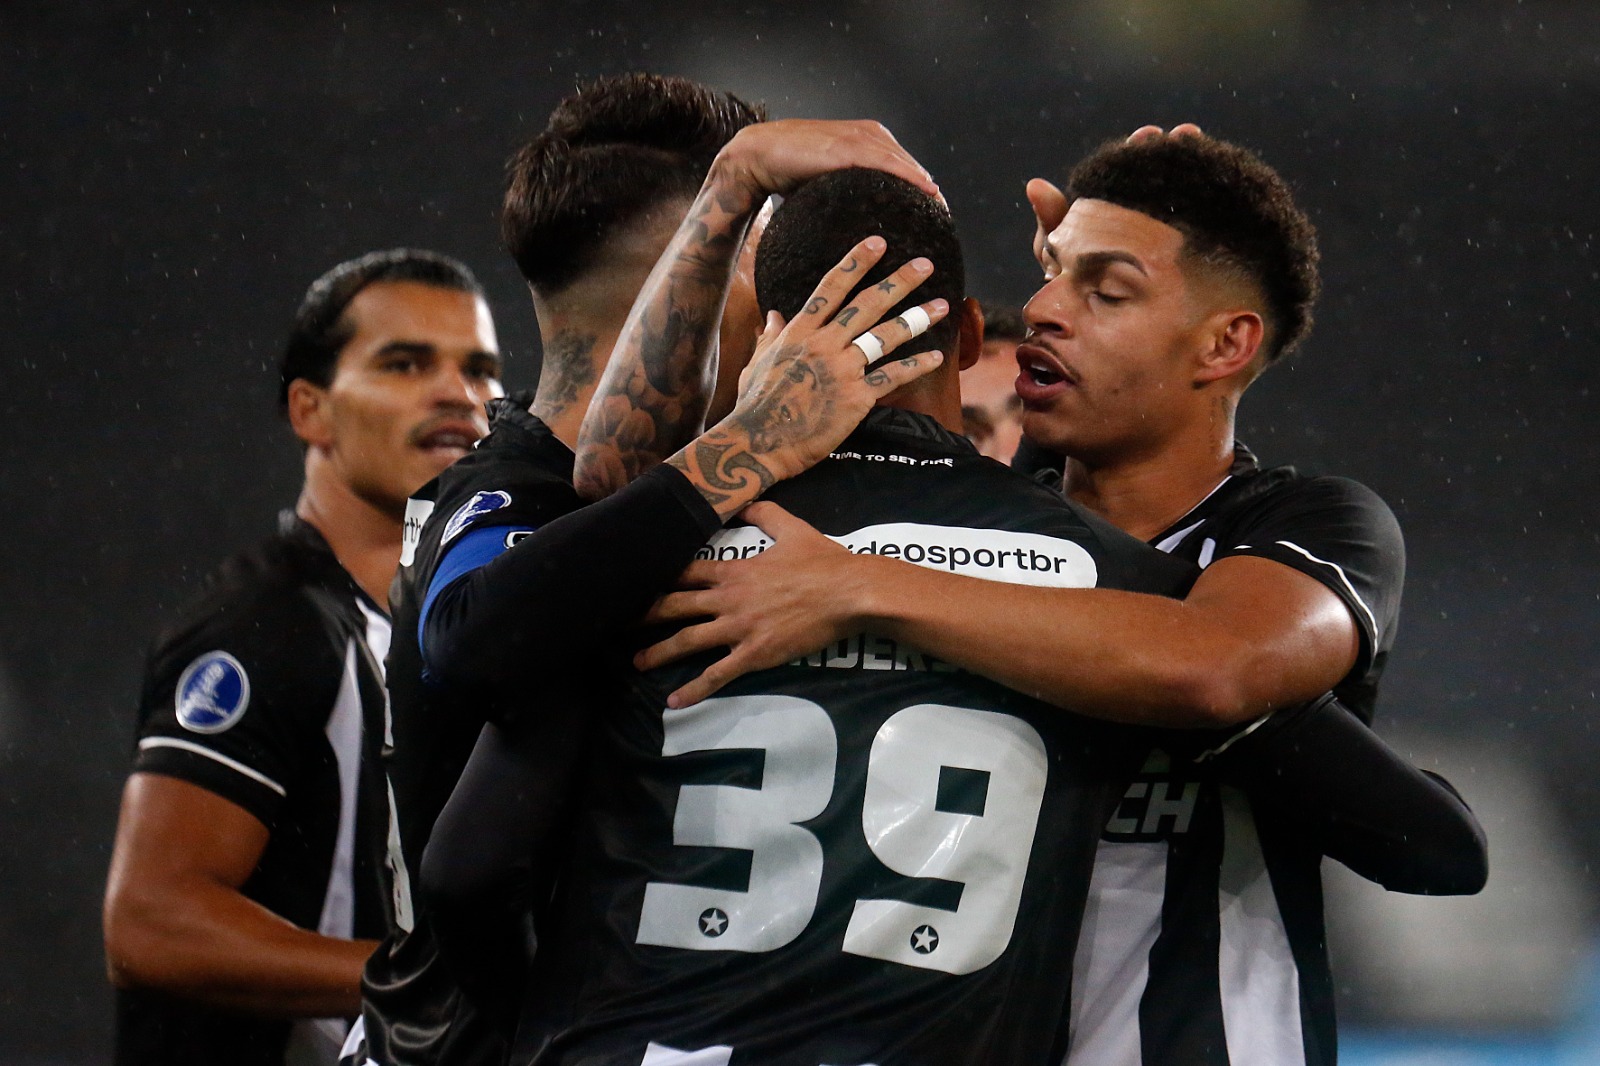 #Sulamericana: Botafogo empata na estreia de Bruno Lage com o Patronato, mas se classifica para oitavas de final da competição